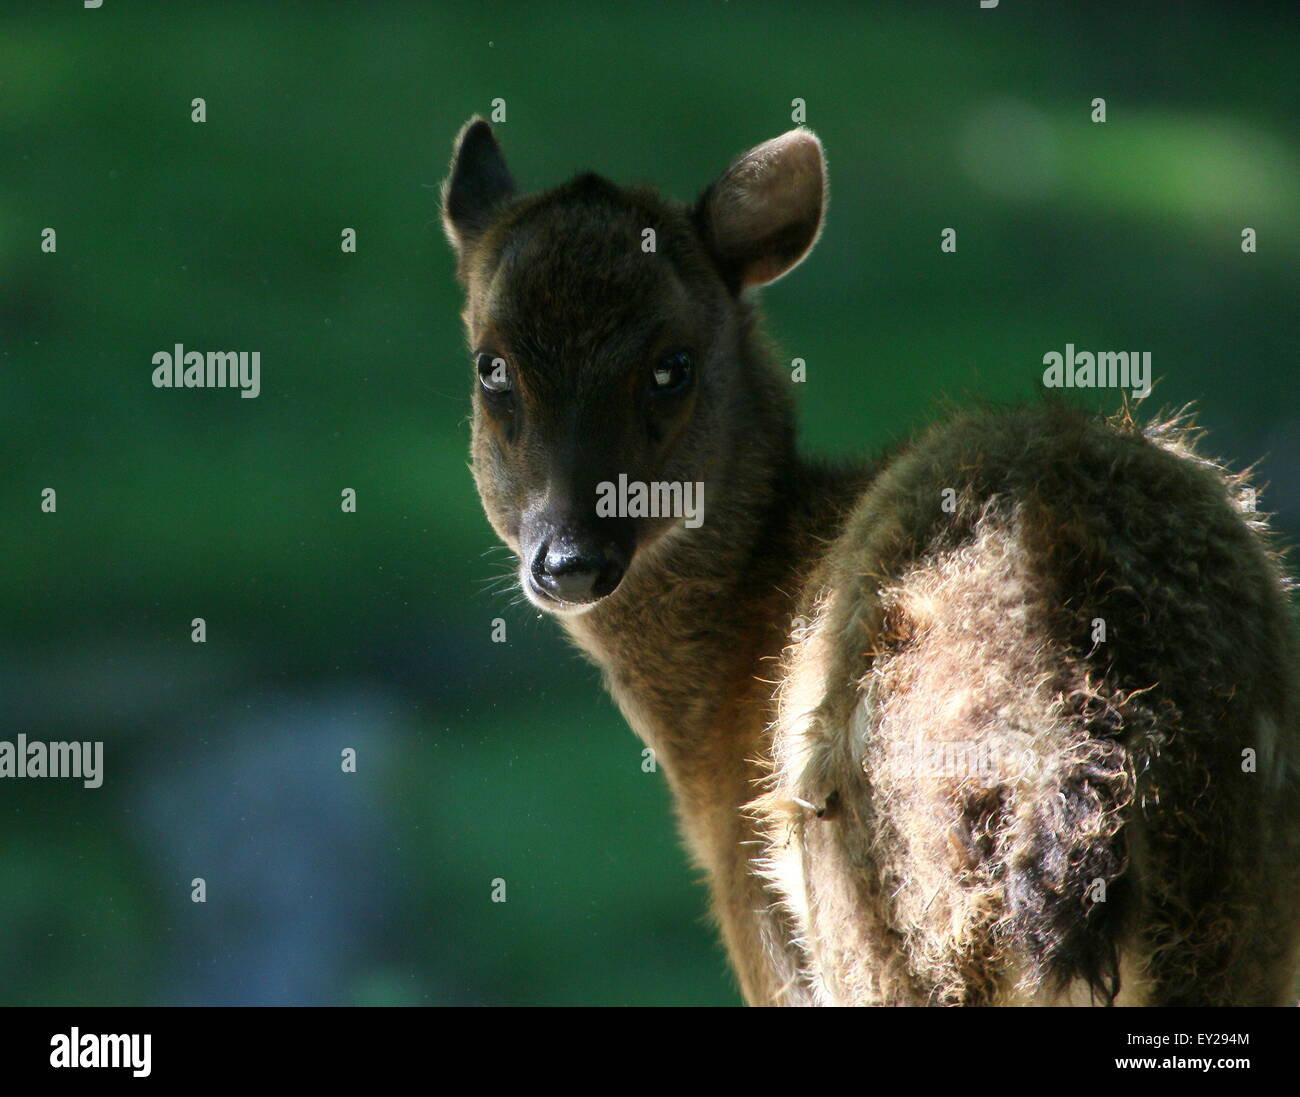 Visayan juvénile ou @Philippine spotted deer (Cervus alfredi, Rusa alfredi) à l'ombre, tête tournée Banque D'Images